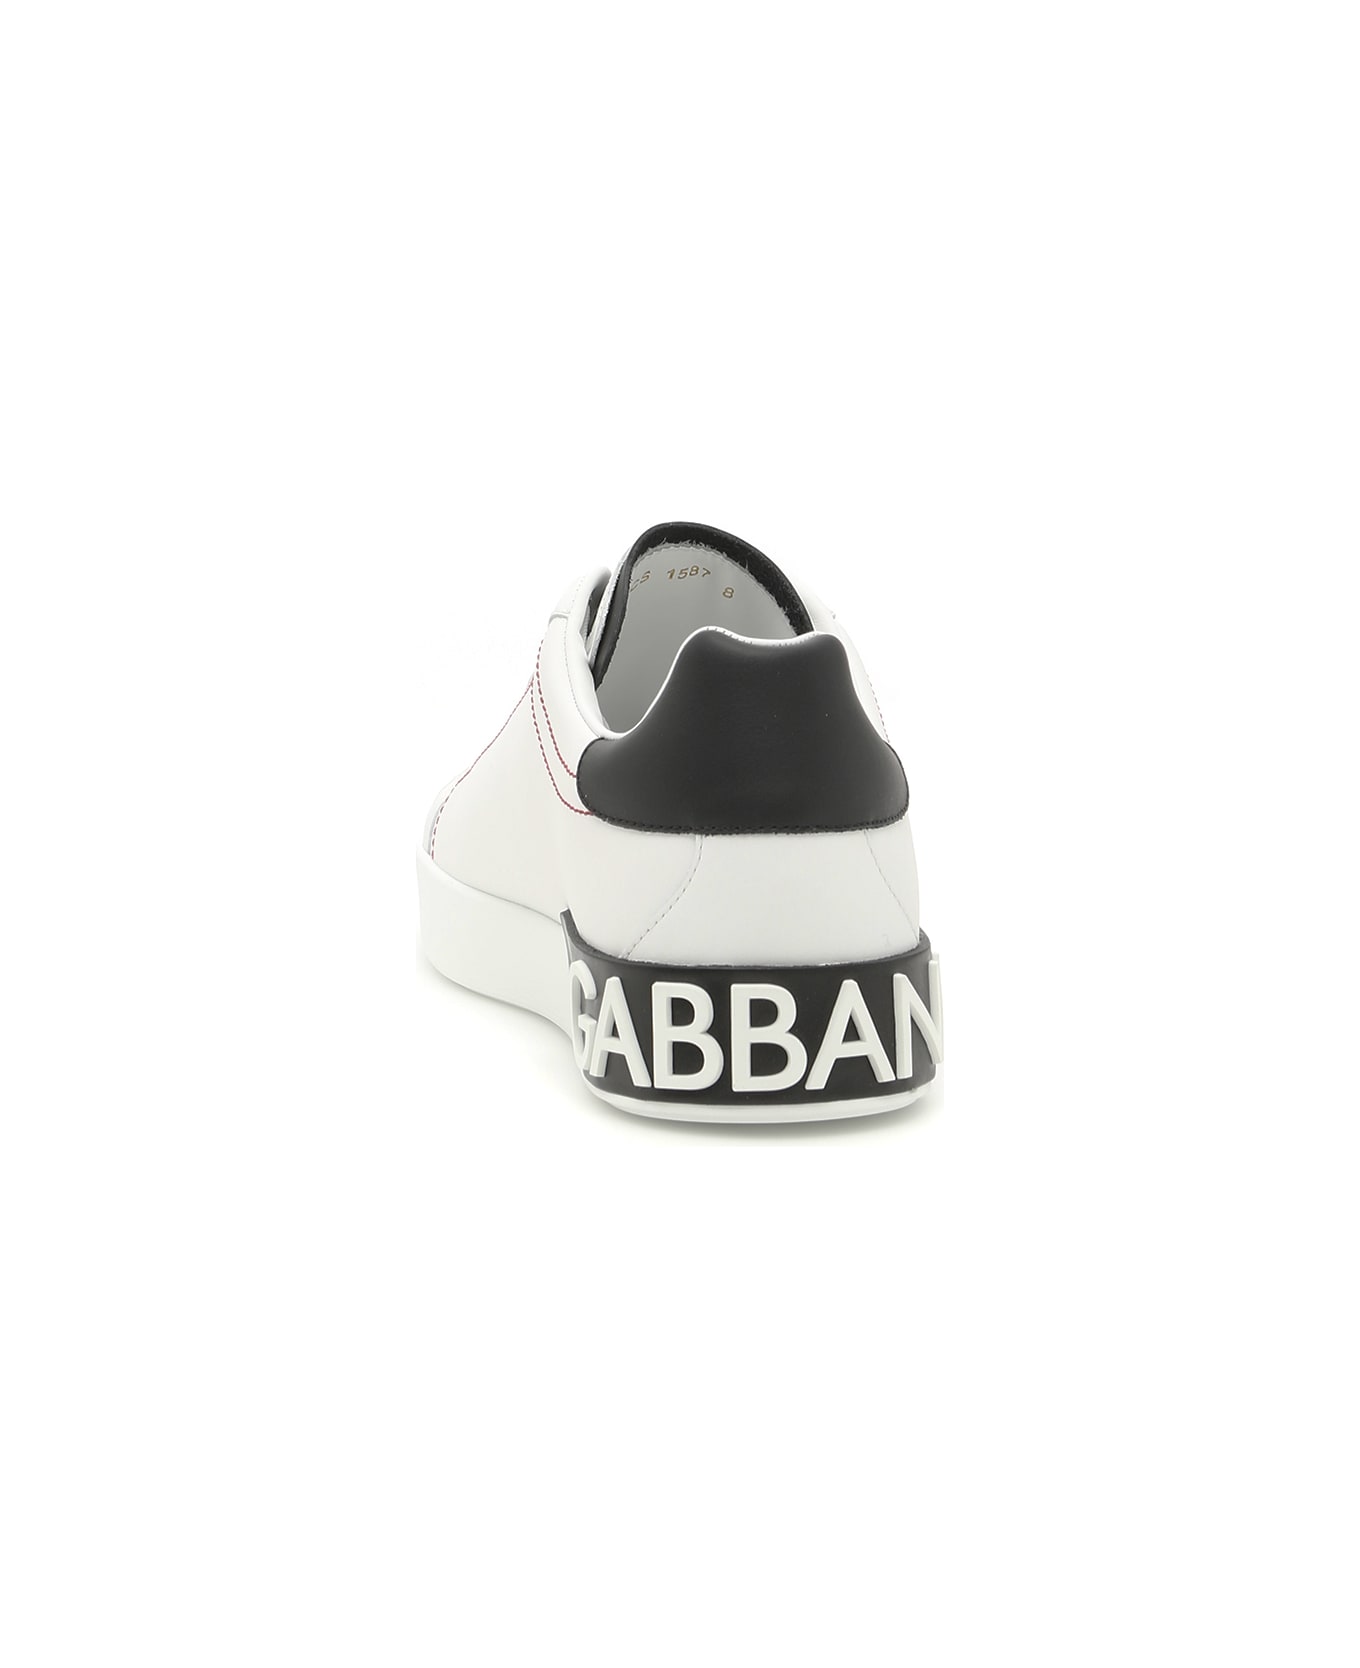 Dolce & Gabbana Portofino Nappa Leather Sneakers - BIANCO NERO